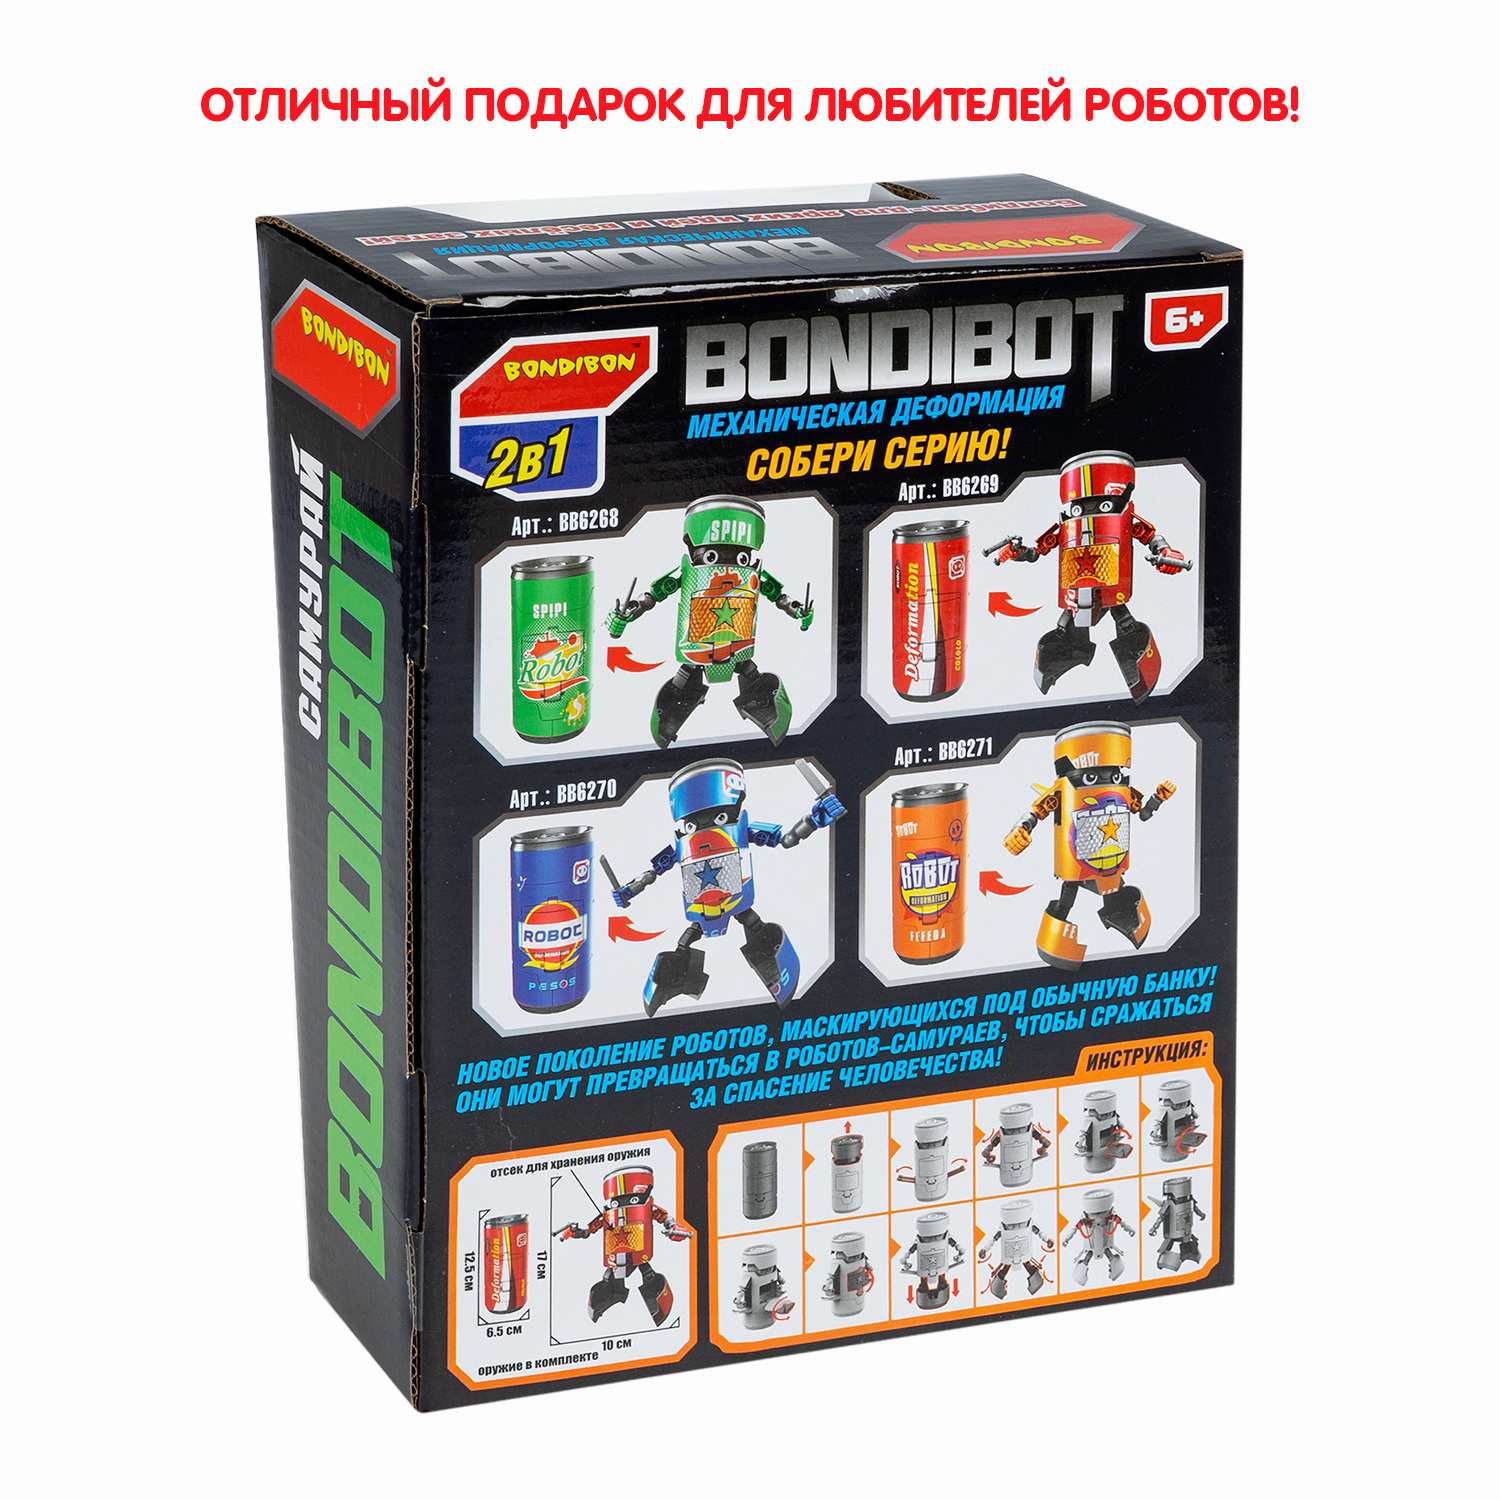 Трансформер BONDIBON BONDIBOT 2 в 1 банка - робот Самурай с оружием зелёного цвета - фото 12